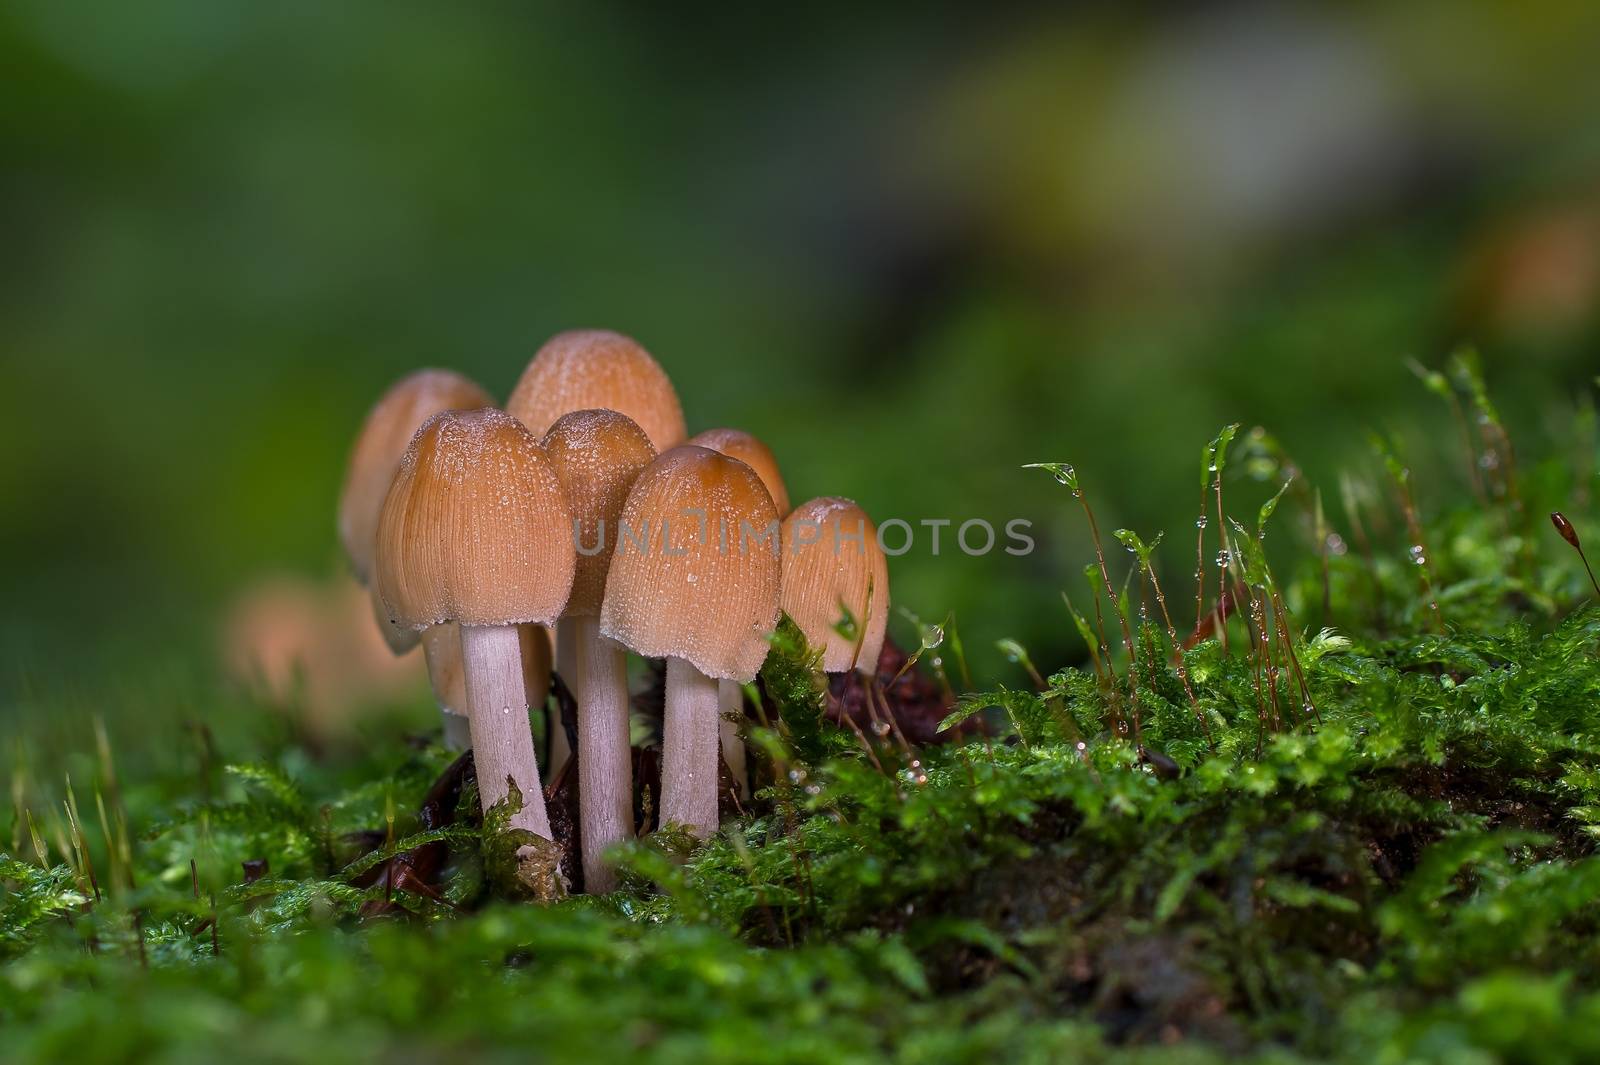 fairy ink cap mushroom, closeup view